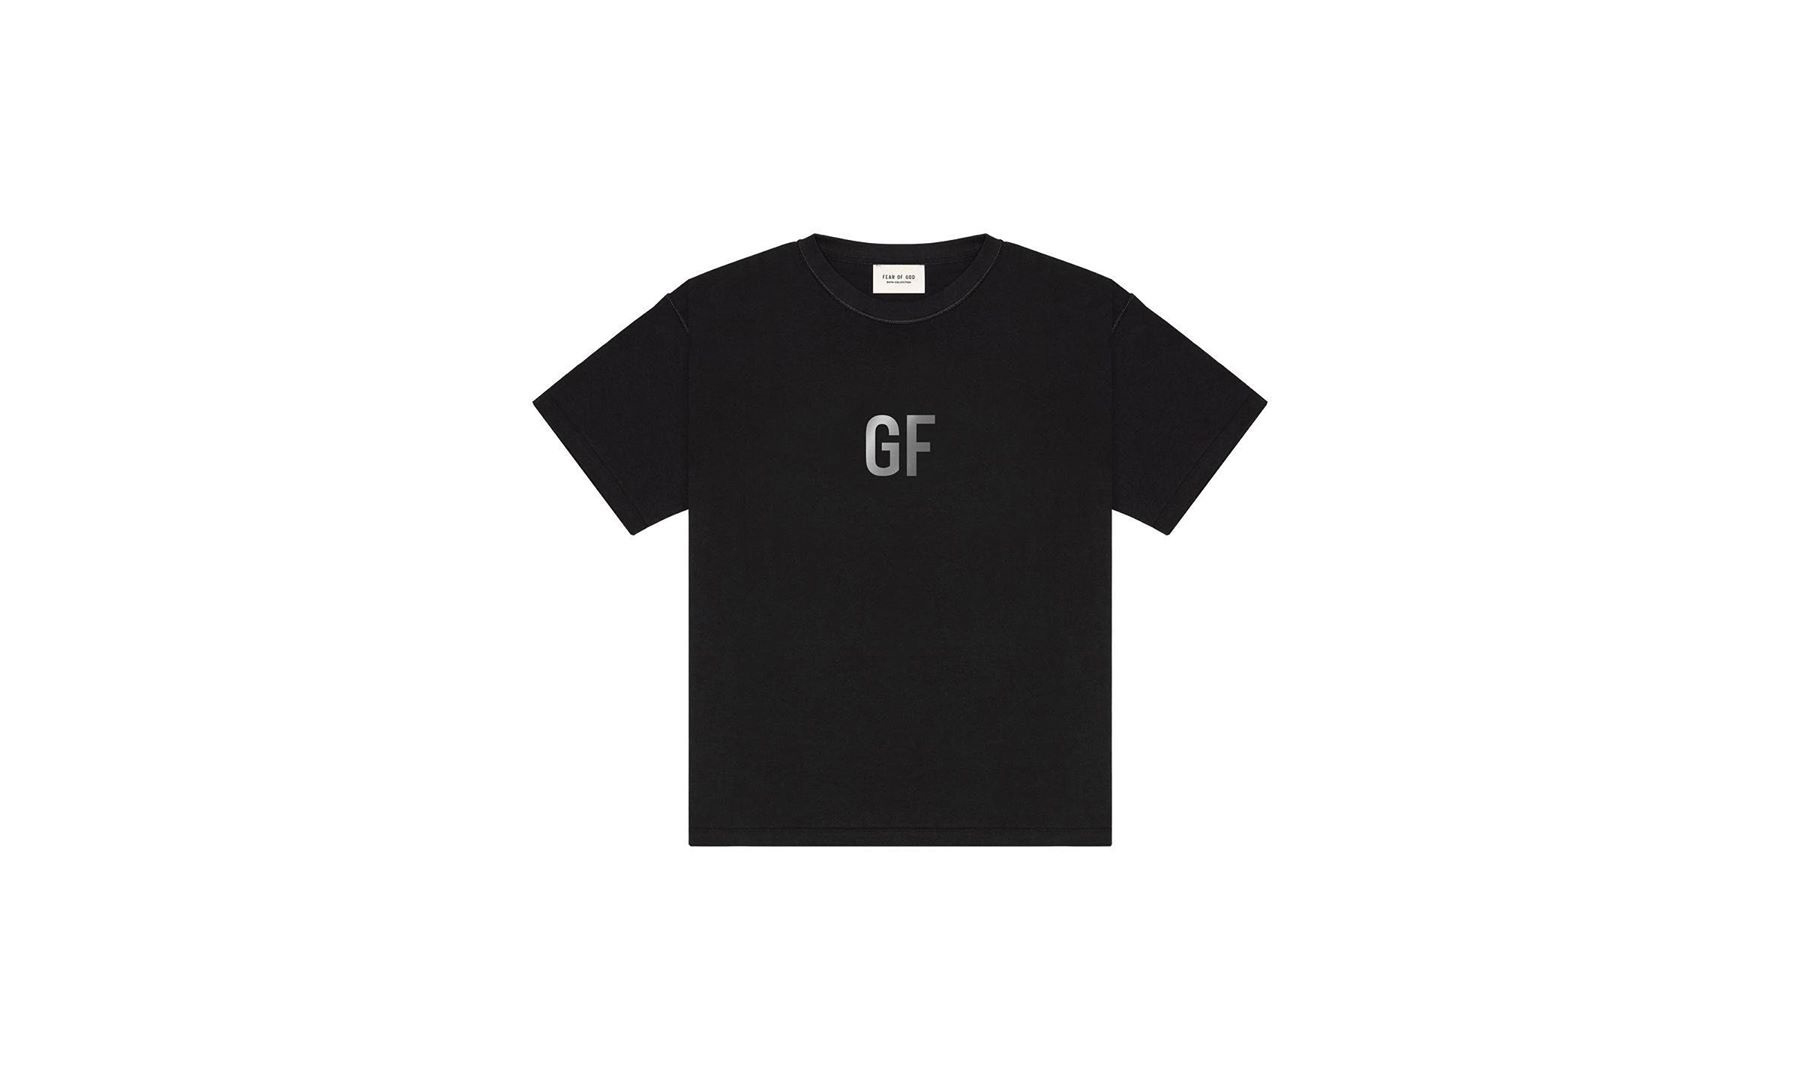 Fear of God 联合 8 家单位打造 George Floyd 慈善 T-Shirt